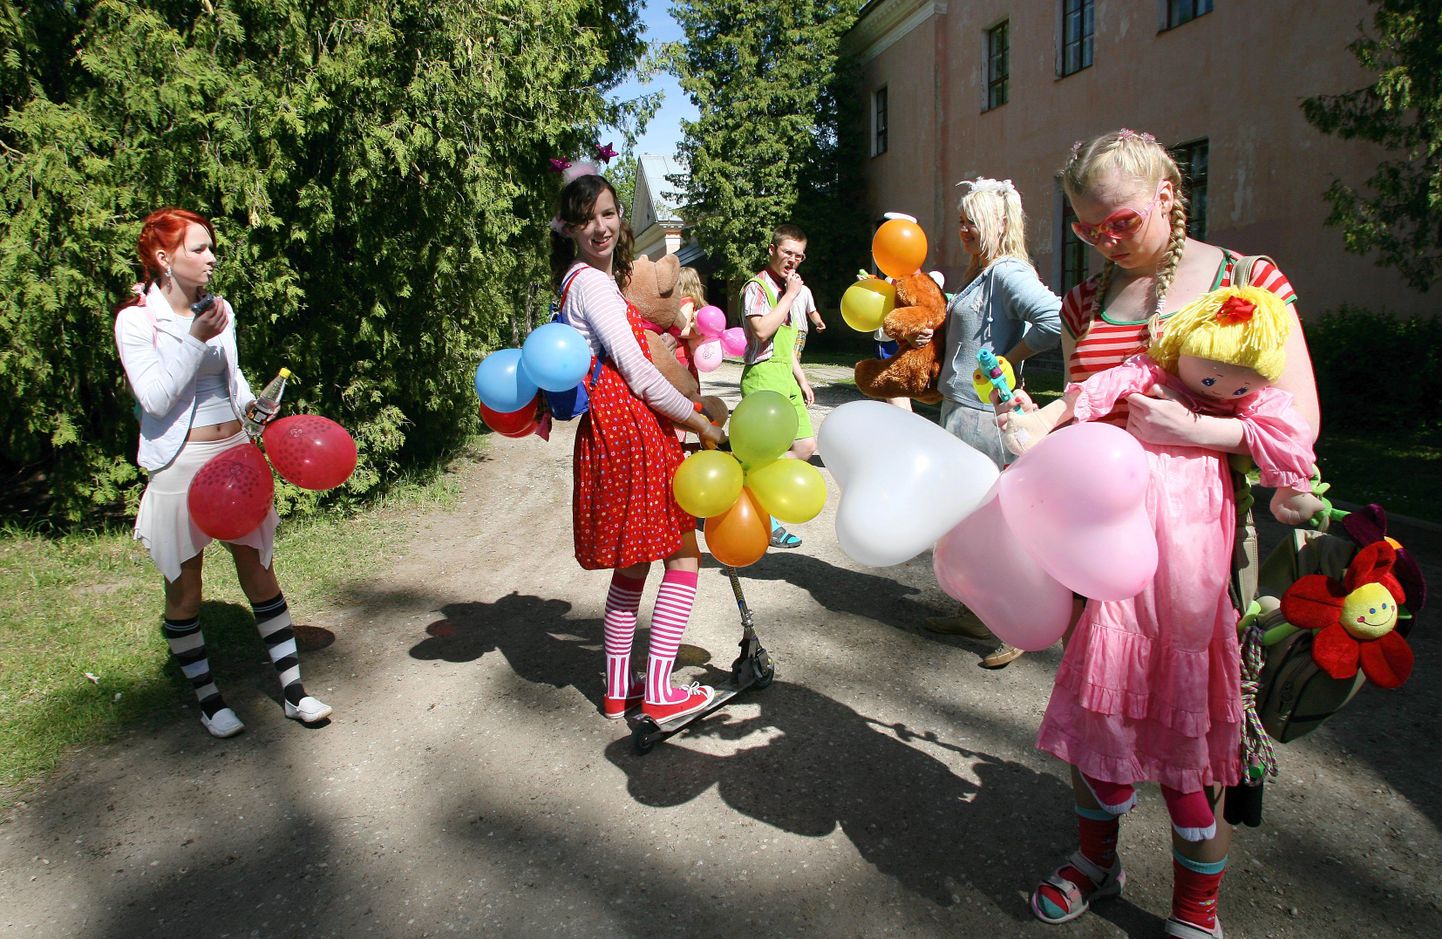 Võõrsilt aastaks Eesti keskkooli õppima tulnud noored peavad siinset elu mõnusaks ja turvaliseks. Pildil on tänavused tutipeolised.